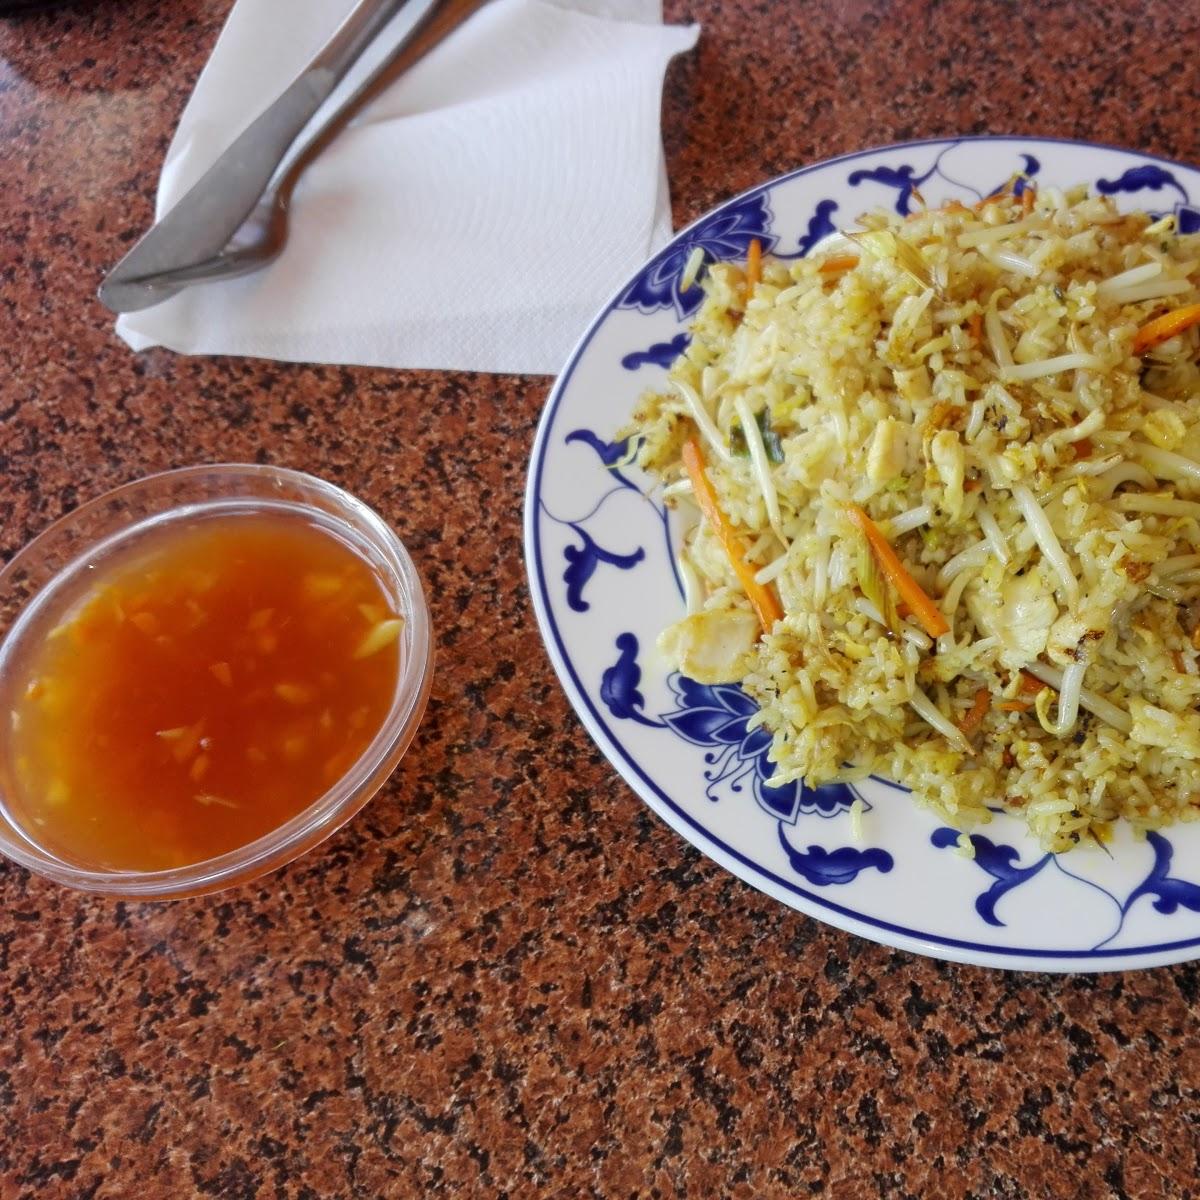 Restaurant "Curry Asia Snack" in Meyenburg